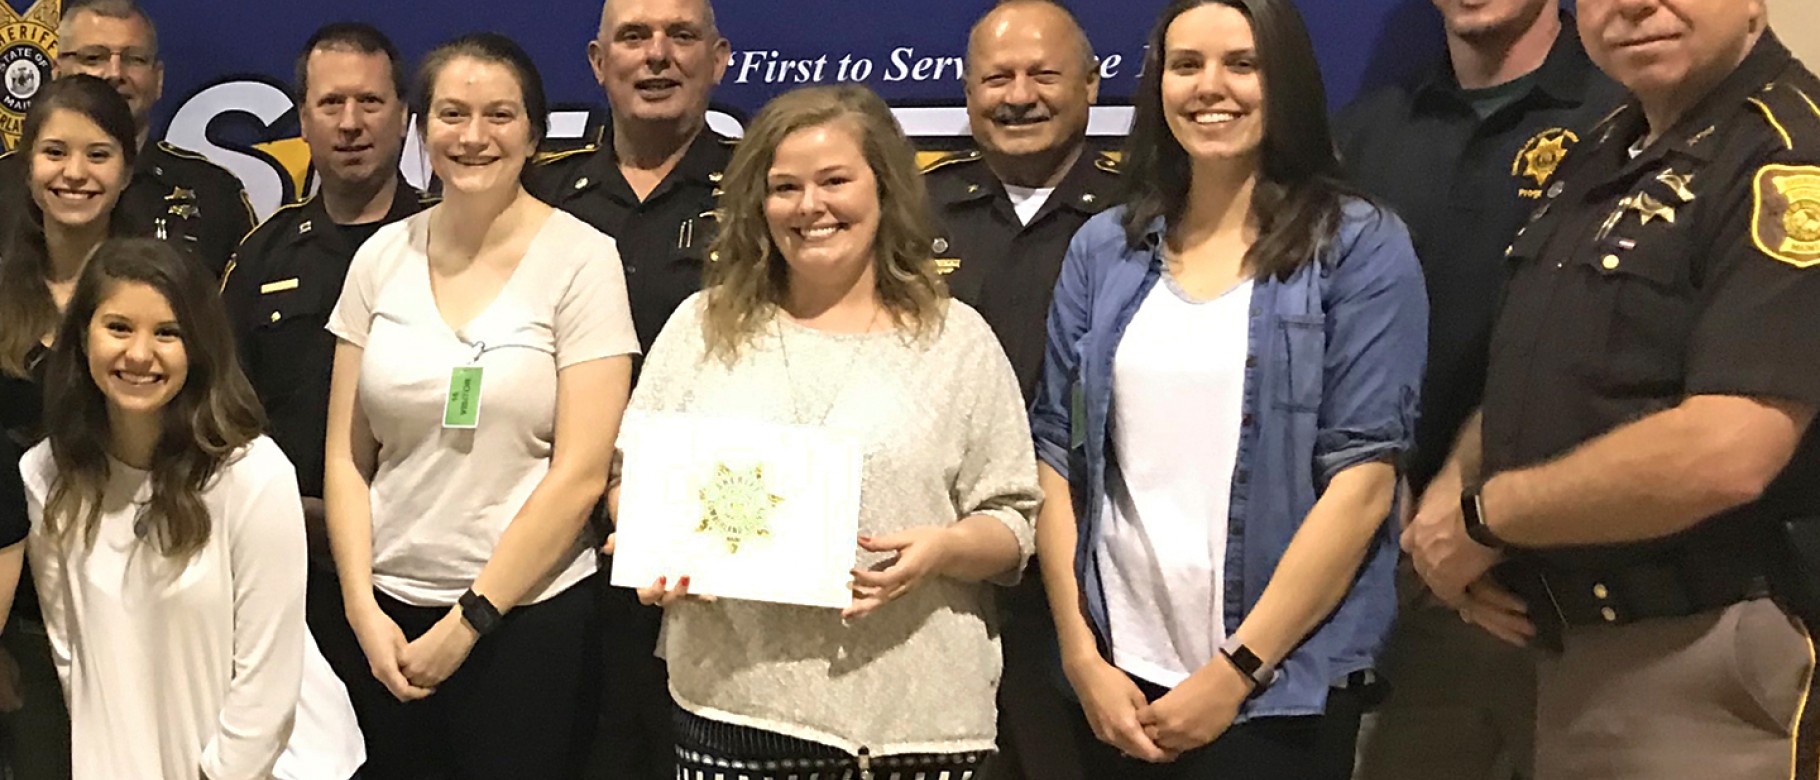 Student and faculty recipients of 2018 Volunteer Appreciation Award